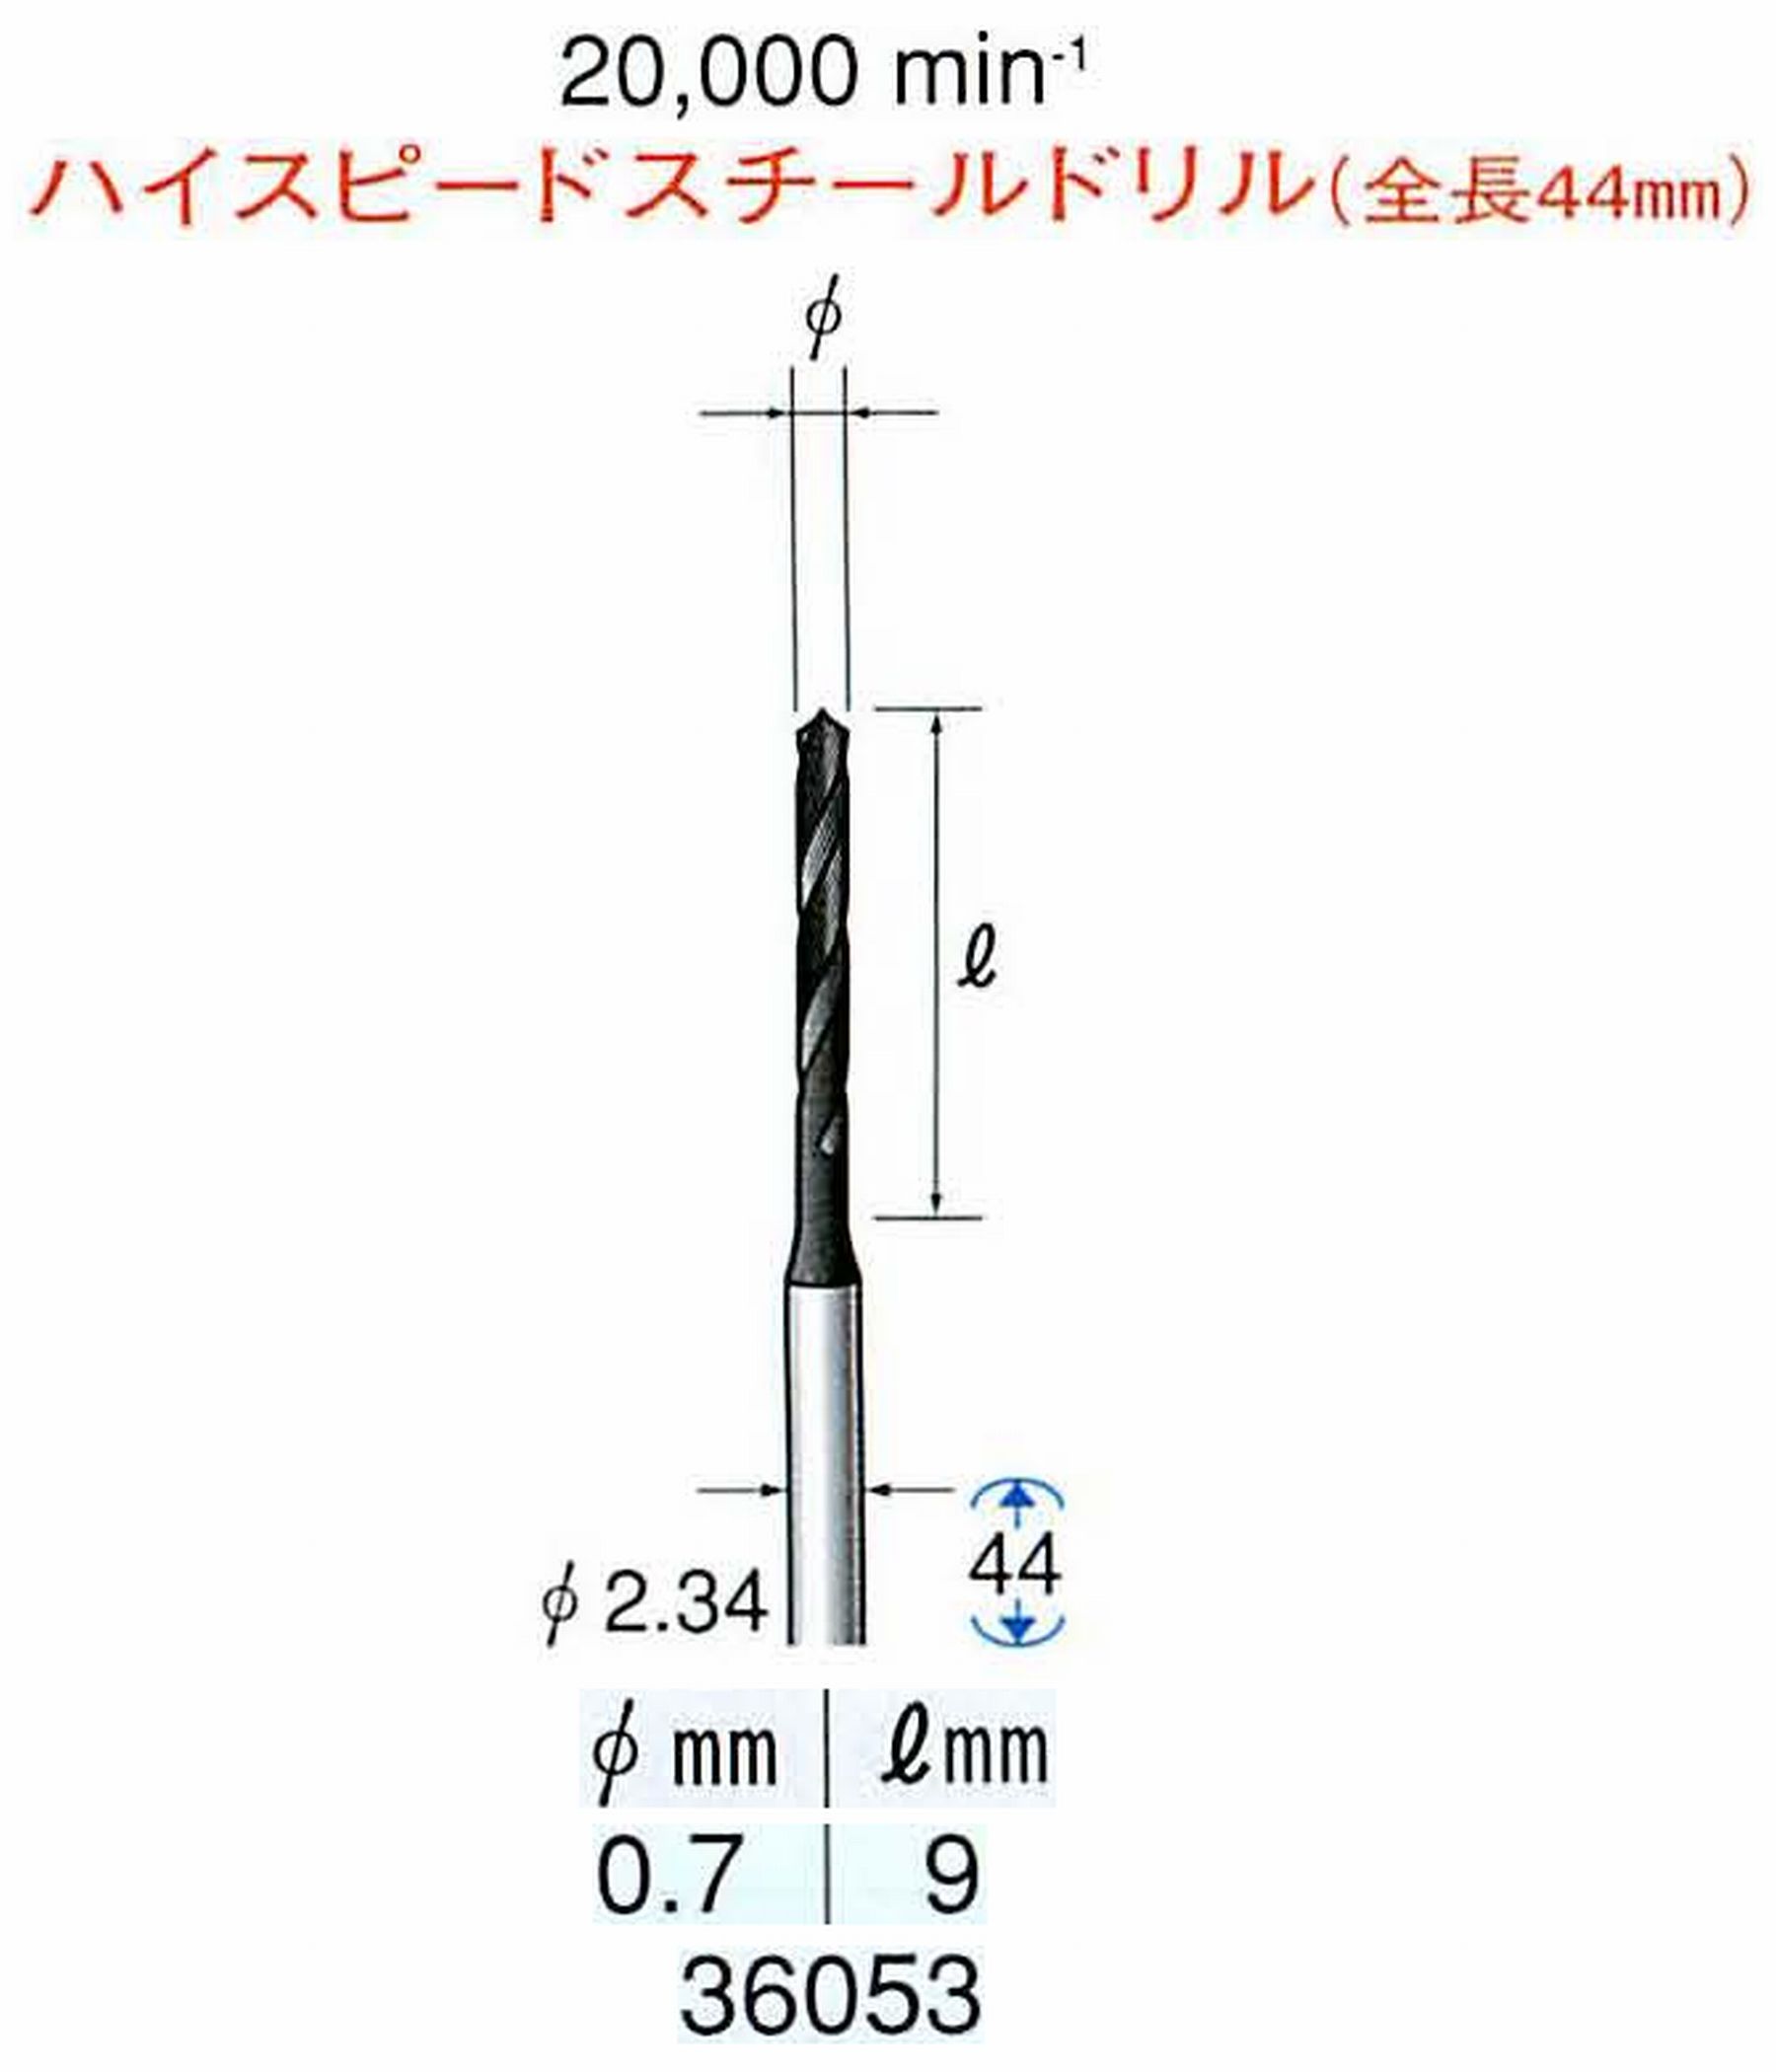 ナカニシ/NAKANISHI ツイストドリル ハイスピードスチール(H.S.S)ドリル(全長44mm) 軸径(シャンク) φ2.34mm 36053